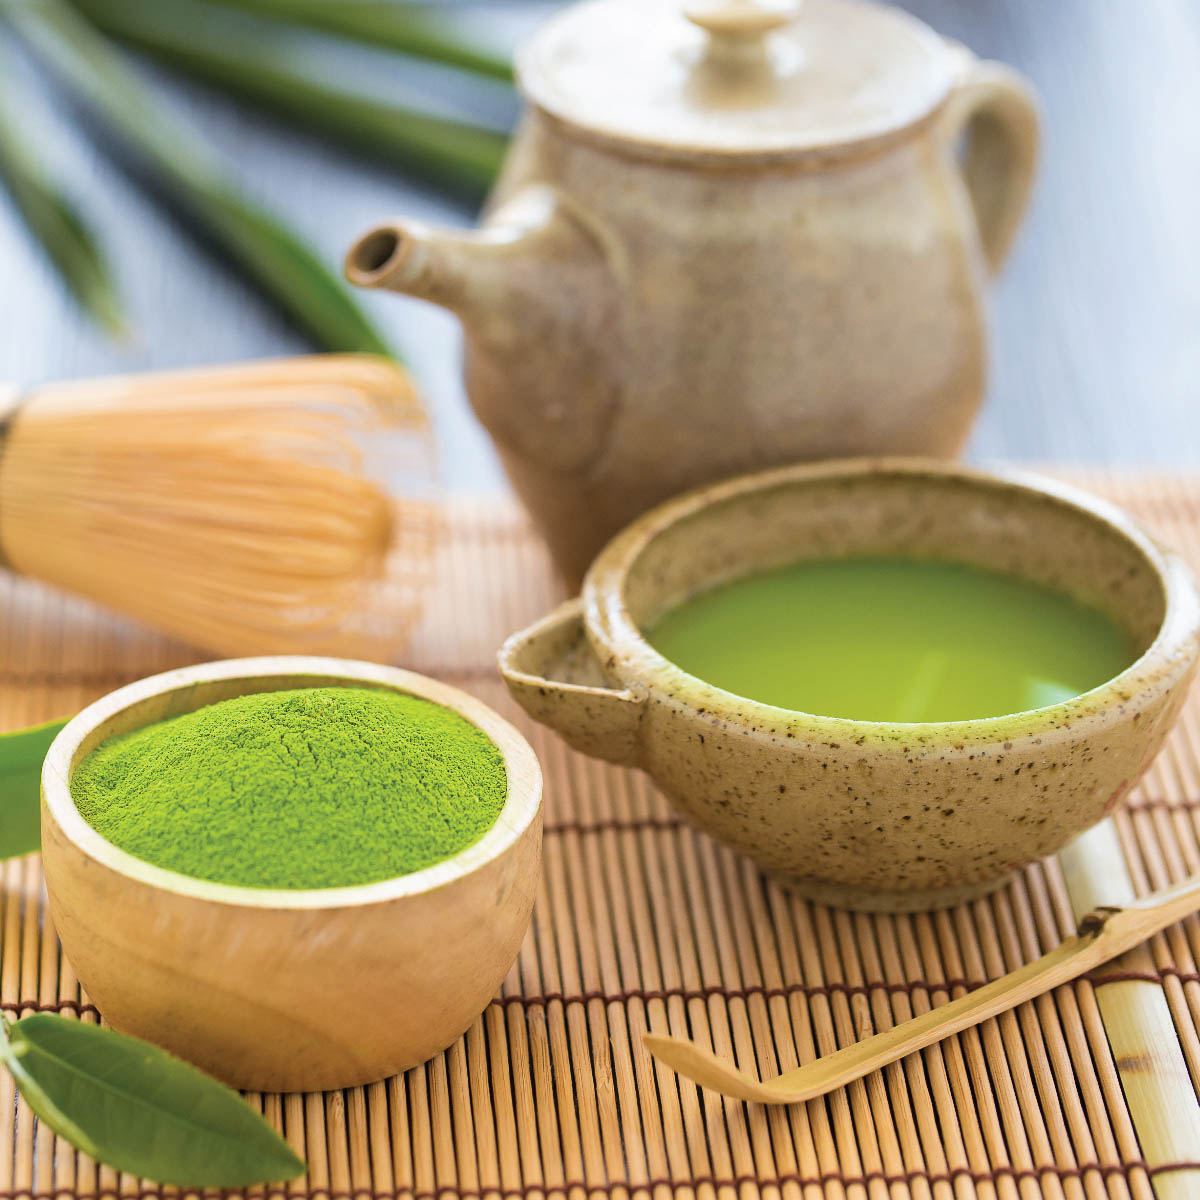 ชาเขียว Green Tea ของกินญี่ปุ่นชื่อดัง